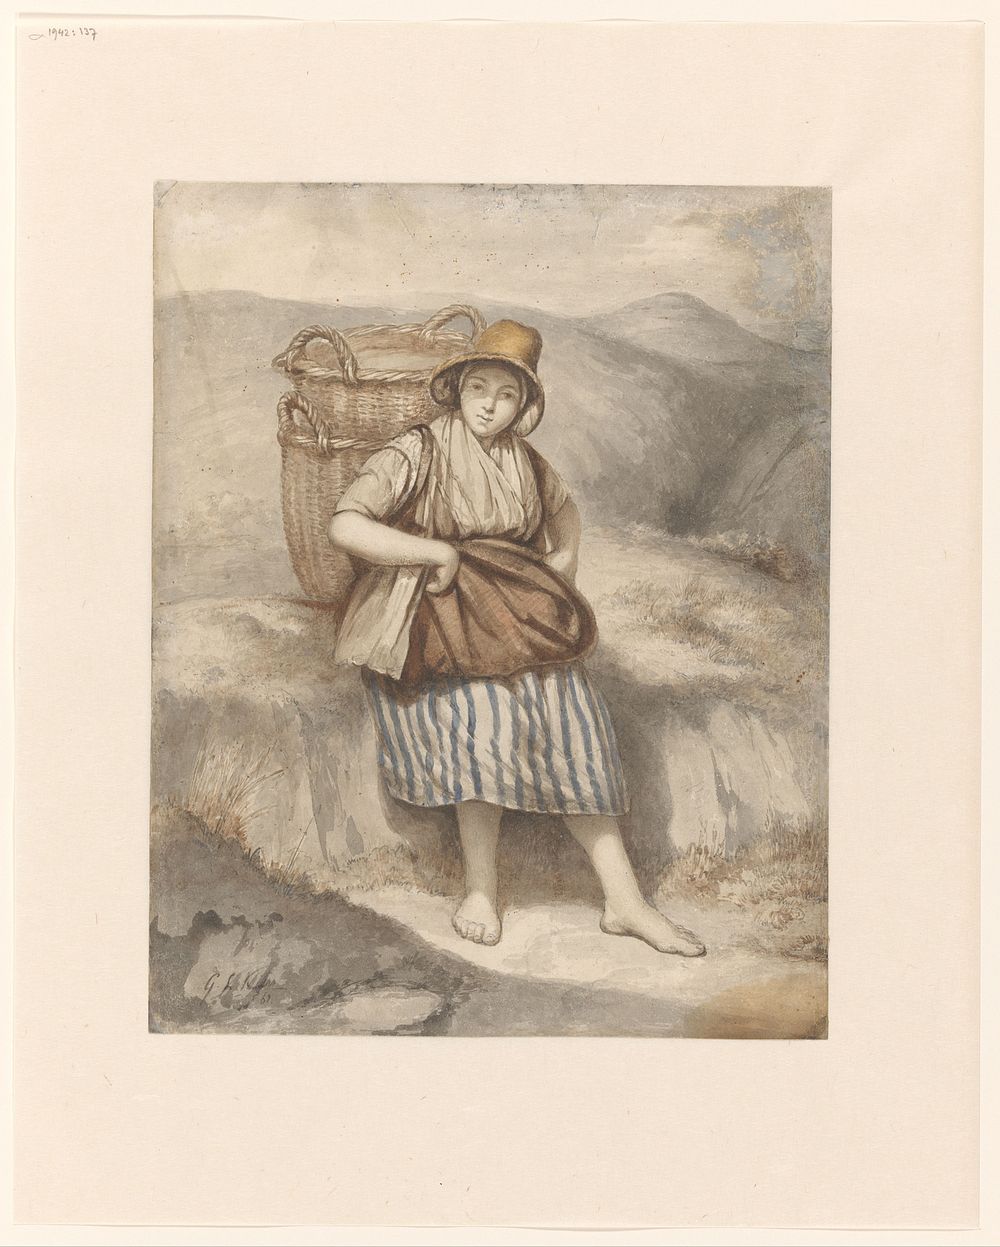 Vissersmeisje met manden, uitrustend tegen een duin (1861) by George Lourens Kiers